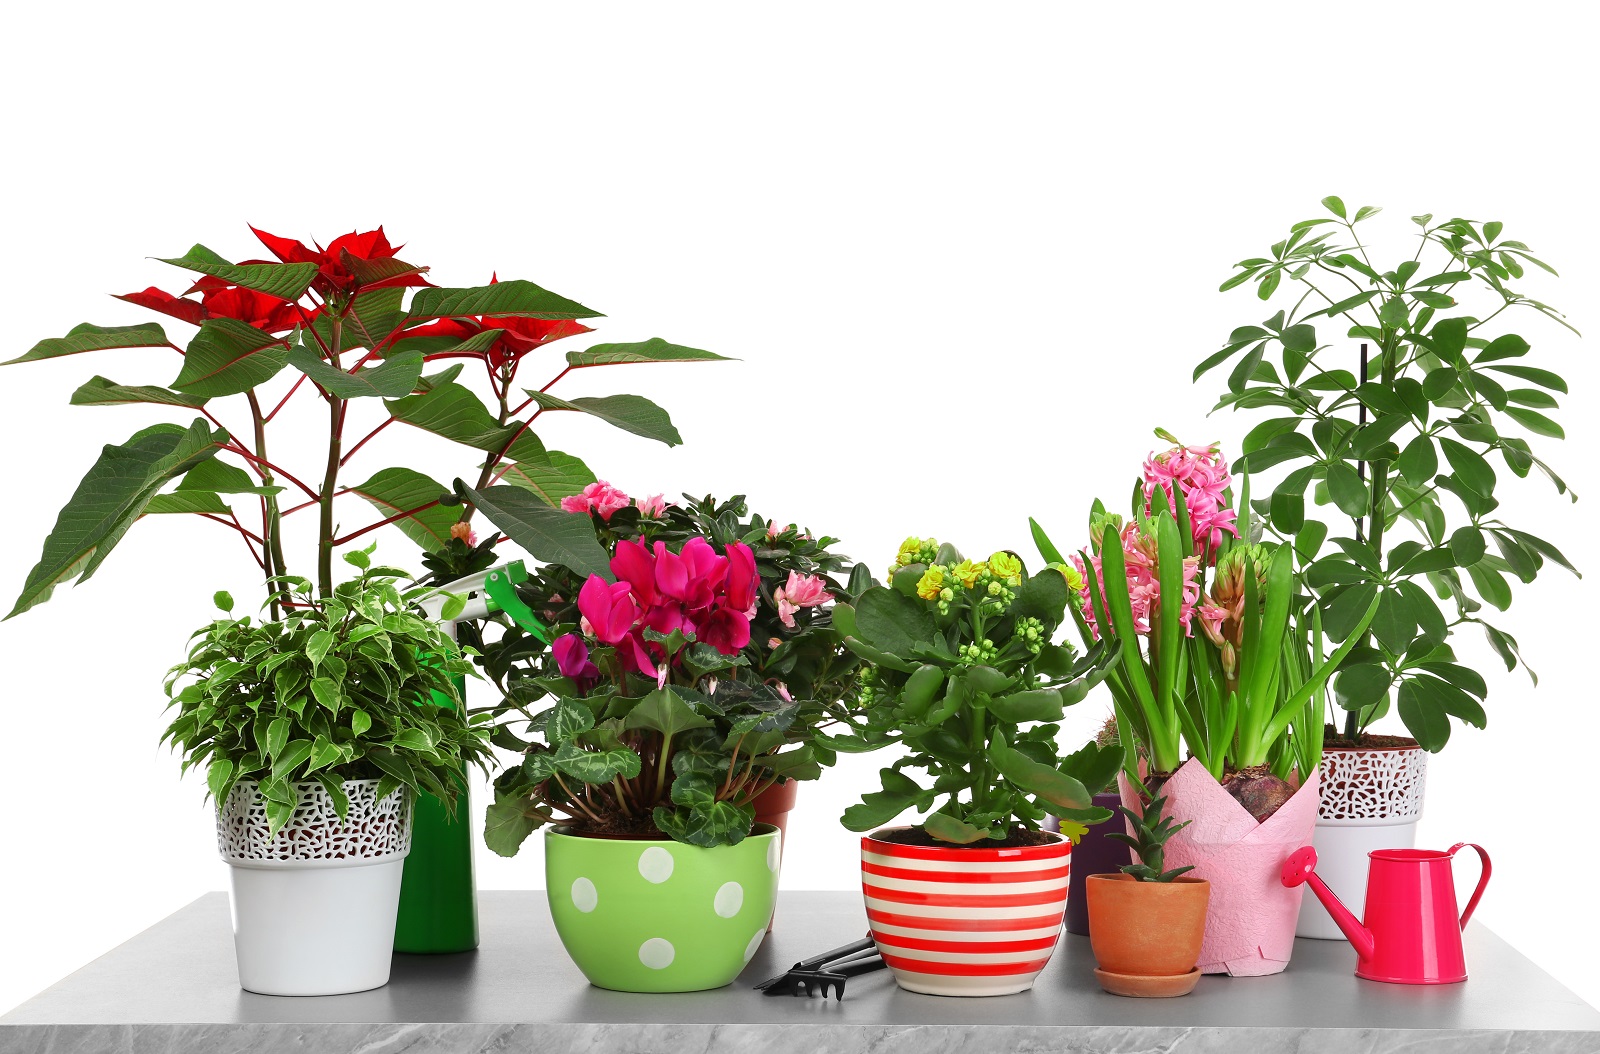 Végétaliser votre intérieur en hiver avec des plantes vertes et fleuries. © Africa Studio, Adobe Stock